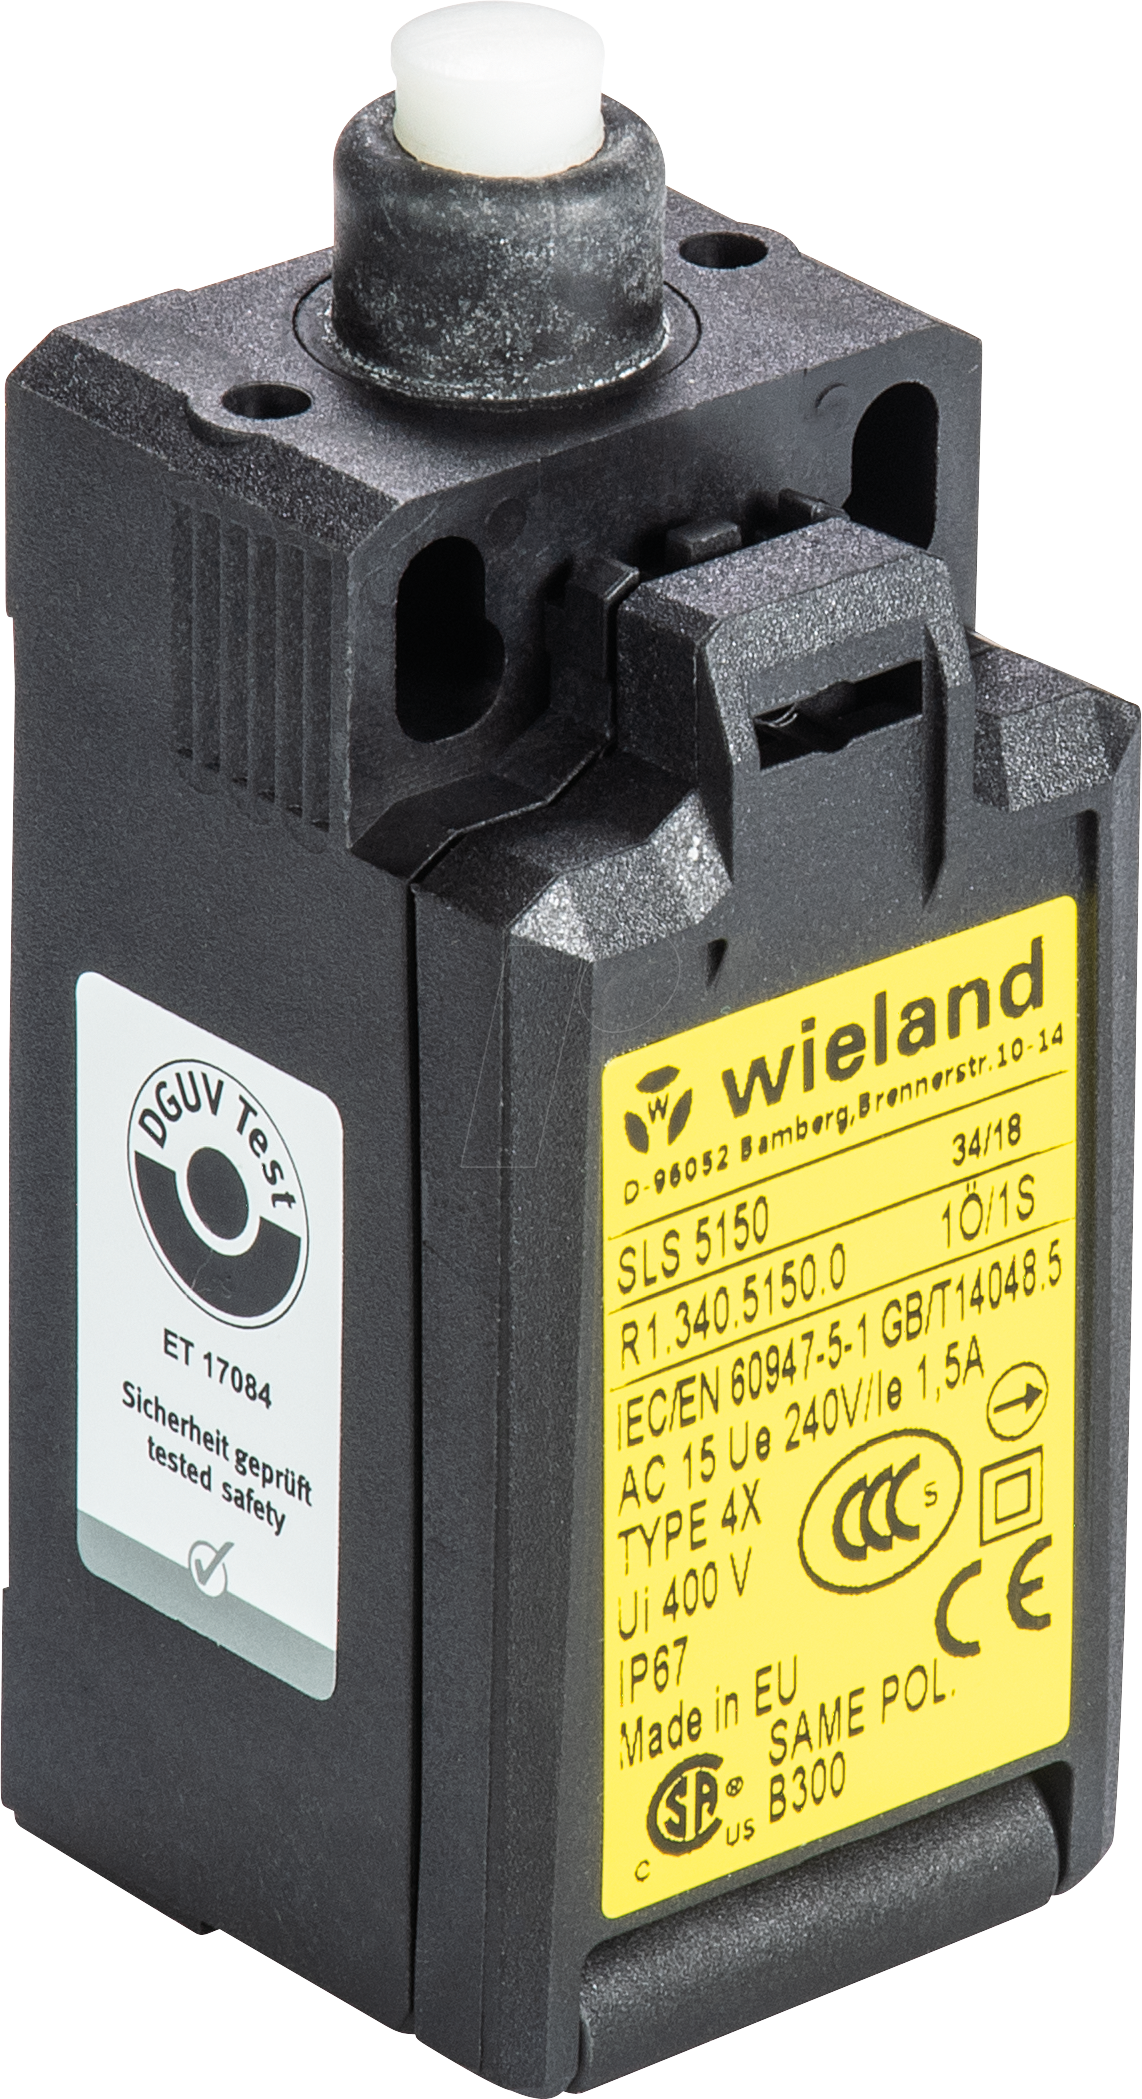 SLS 6230 - Sicherheitsschalter SLS 6230, 2 NC von Wieland